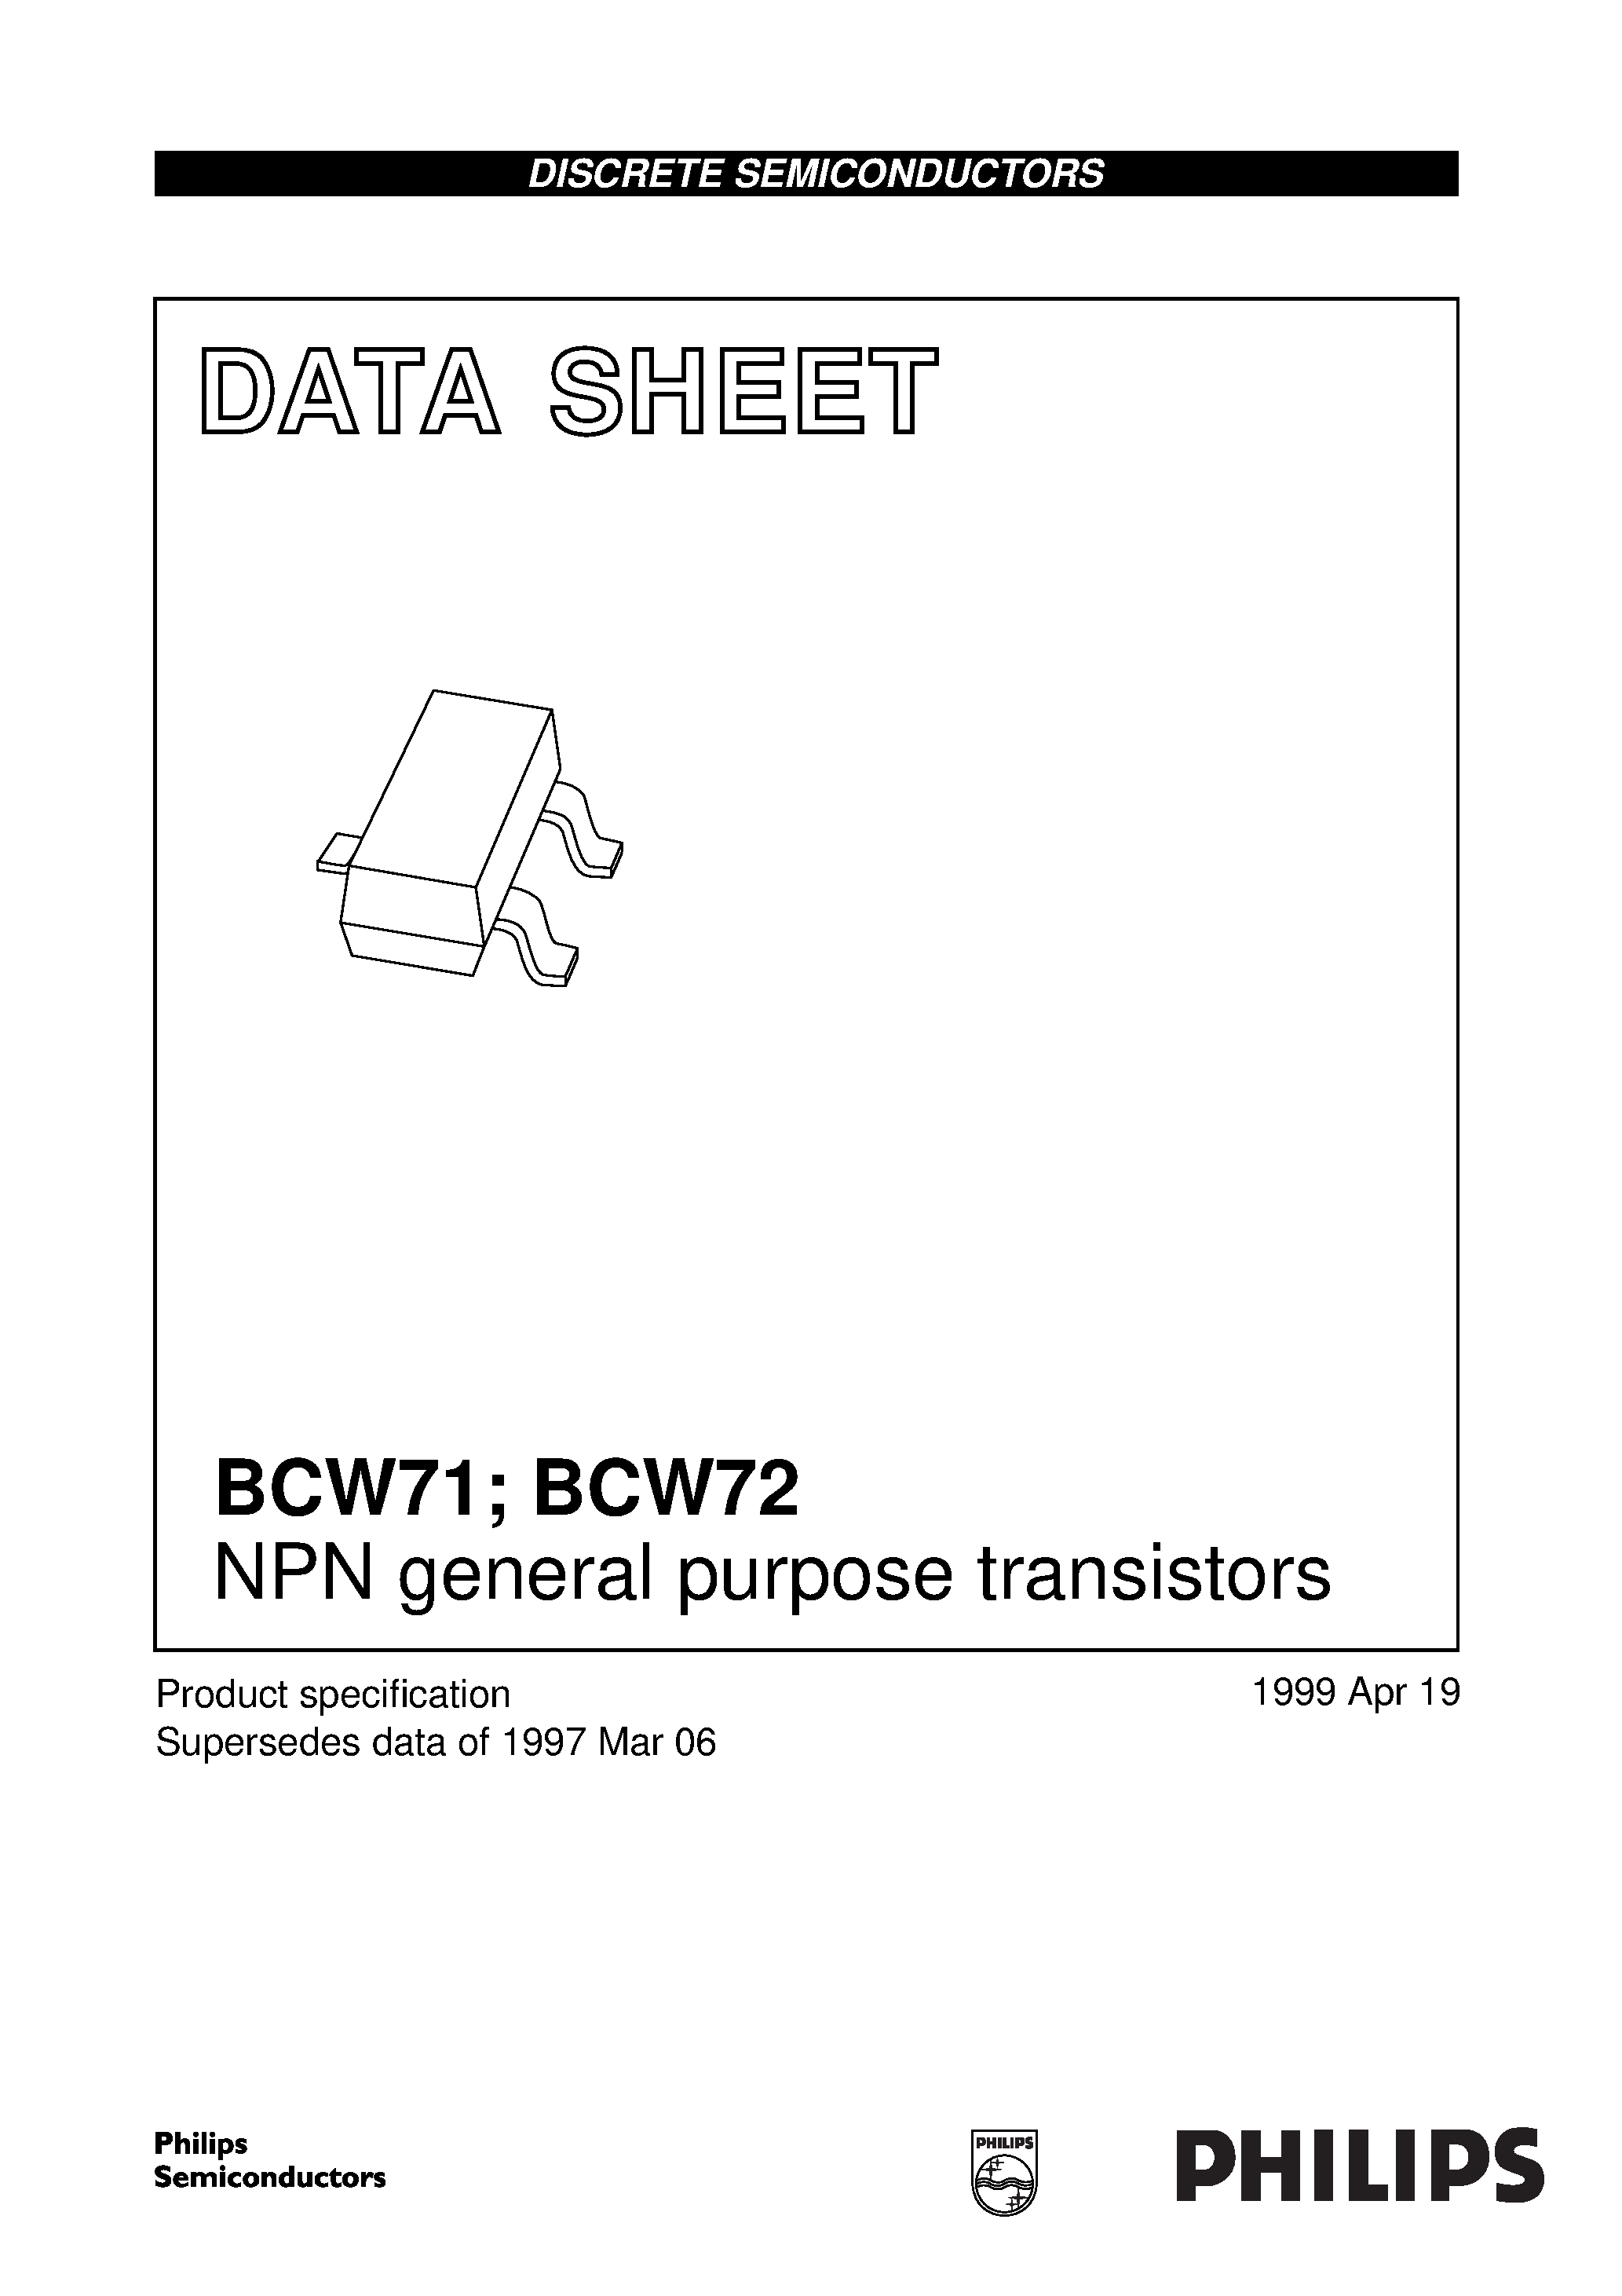 Datasheet BCW71 - NPN general purpose transistors page 1